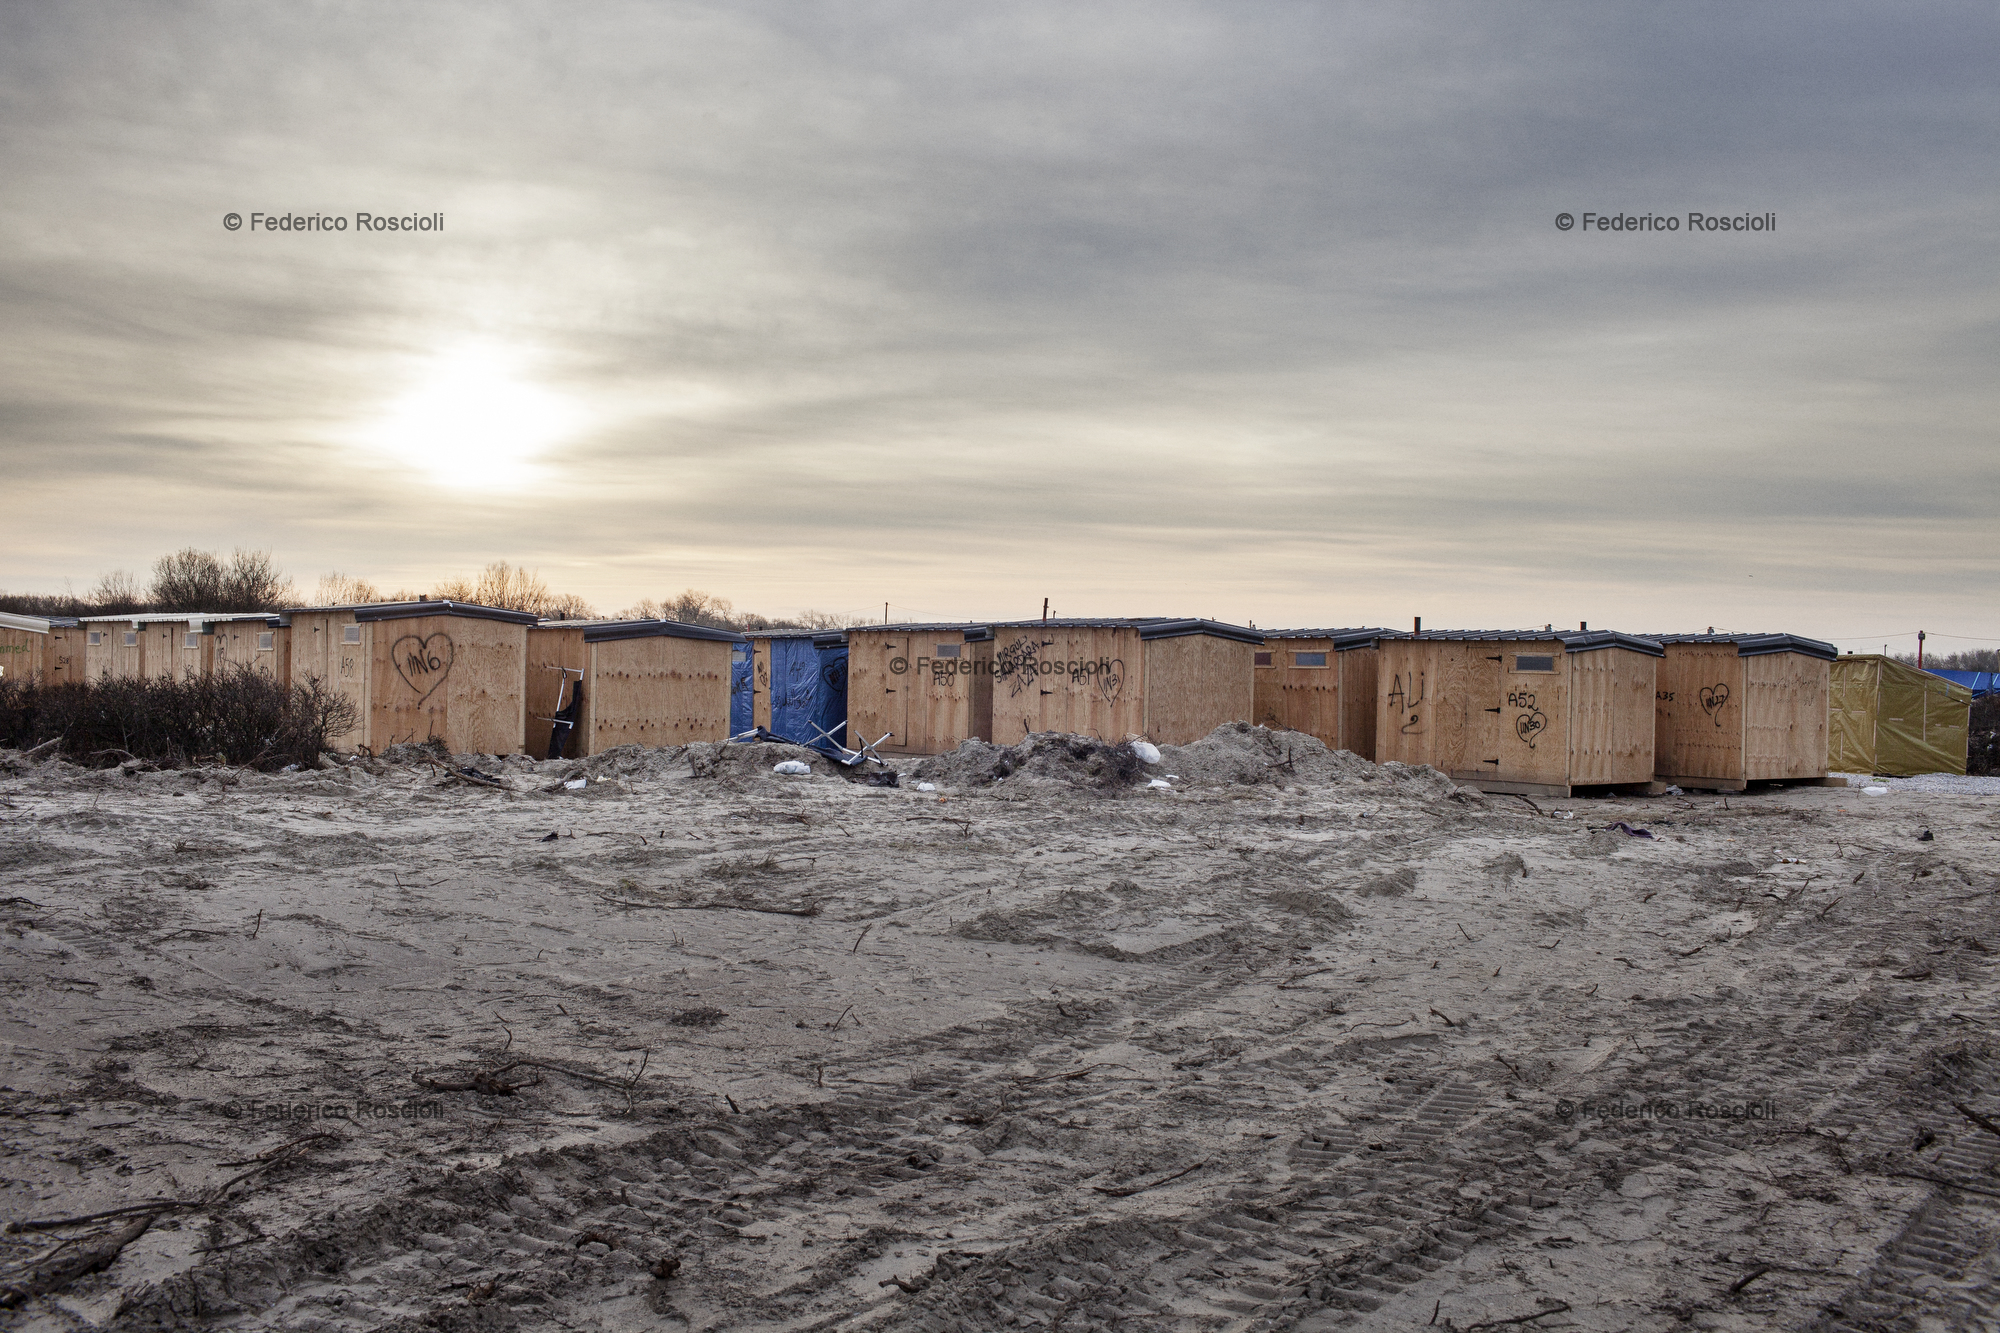 Calais, France. February 28, 2016. The Sirian area of the camp.